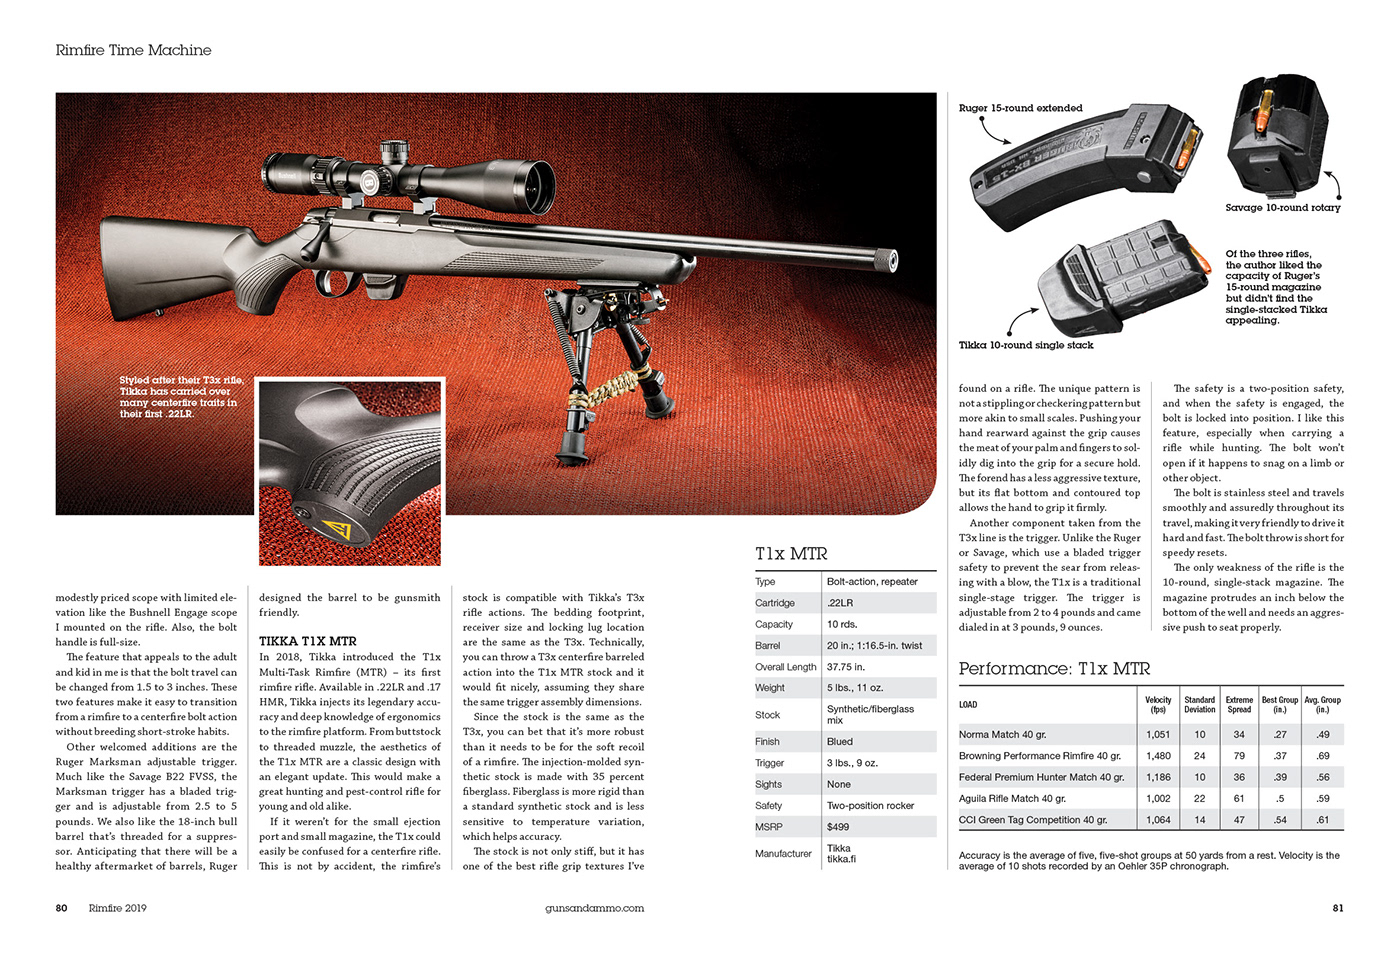 Rimefire guns .22 magazine Firearms